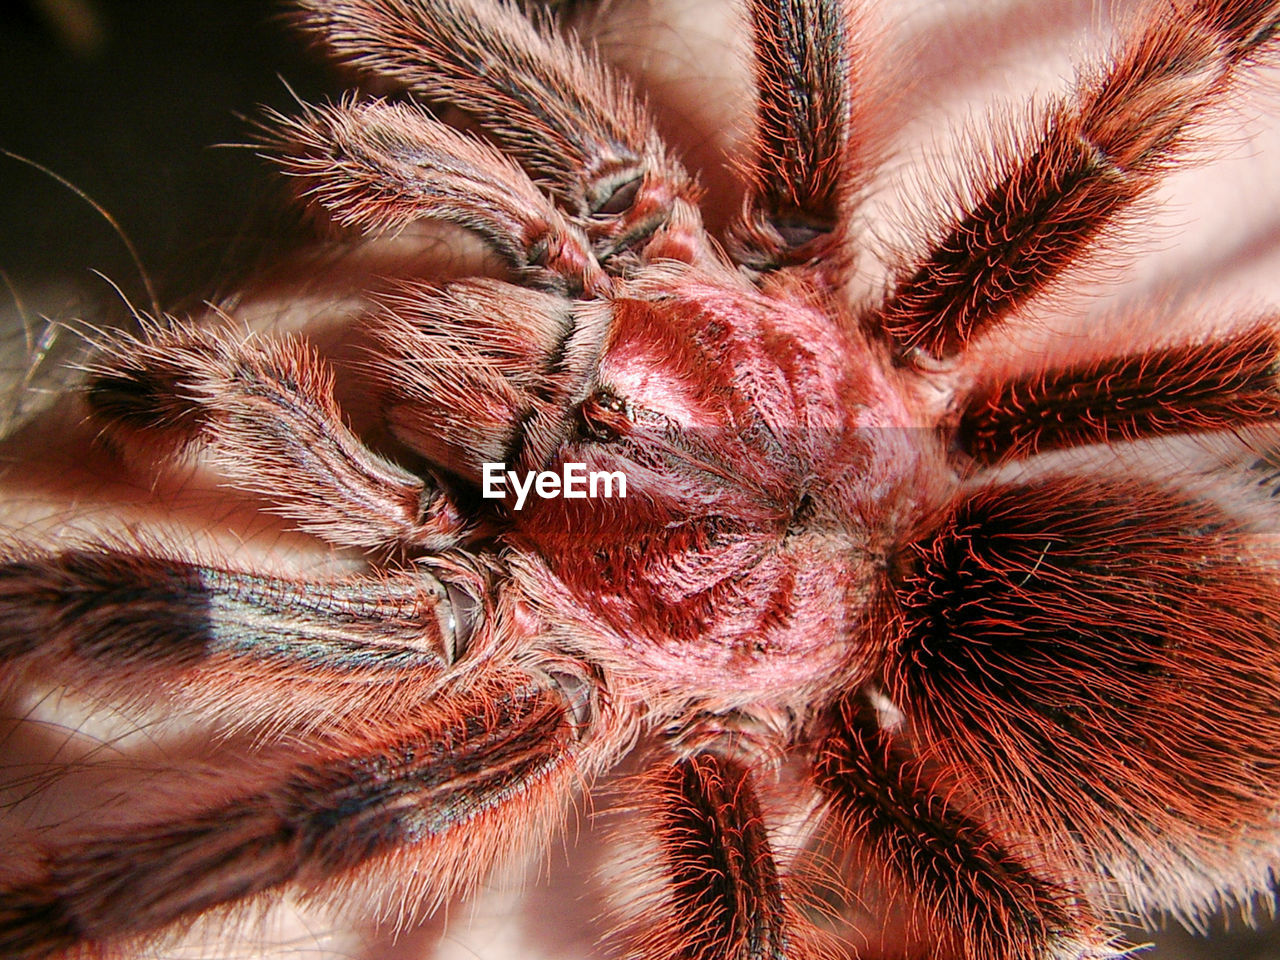 Grammostola rosea close up pink hair spider